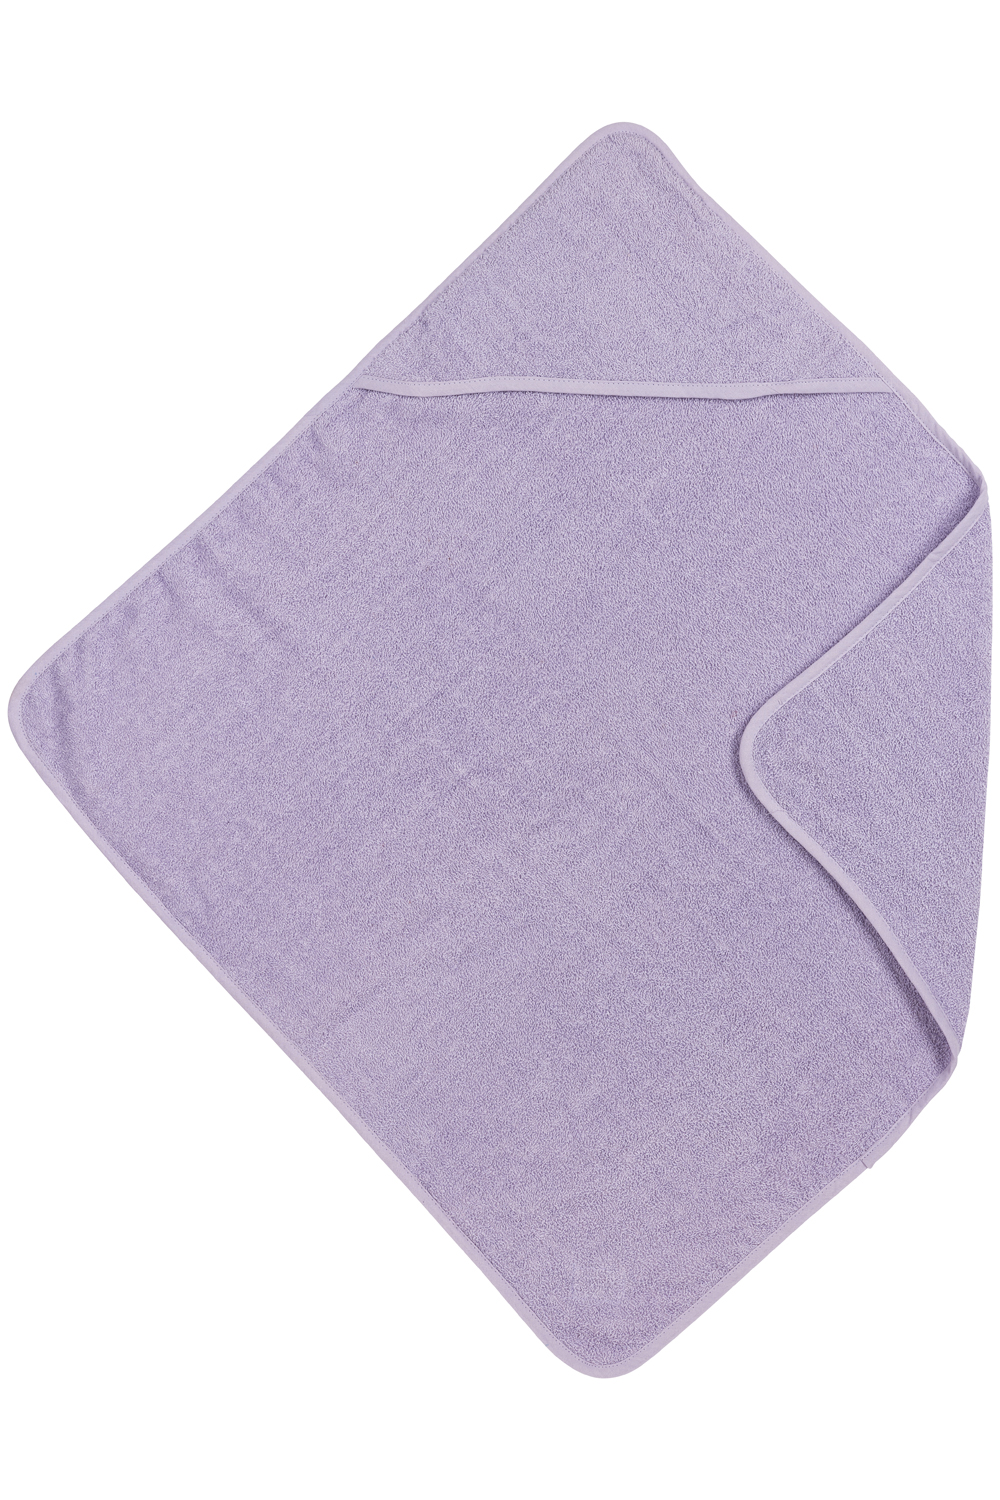 Bathcape Basic Terry - Soft Lilac - 75x75cm